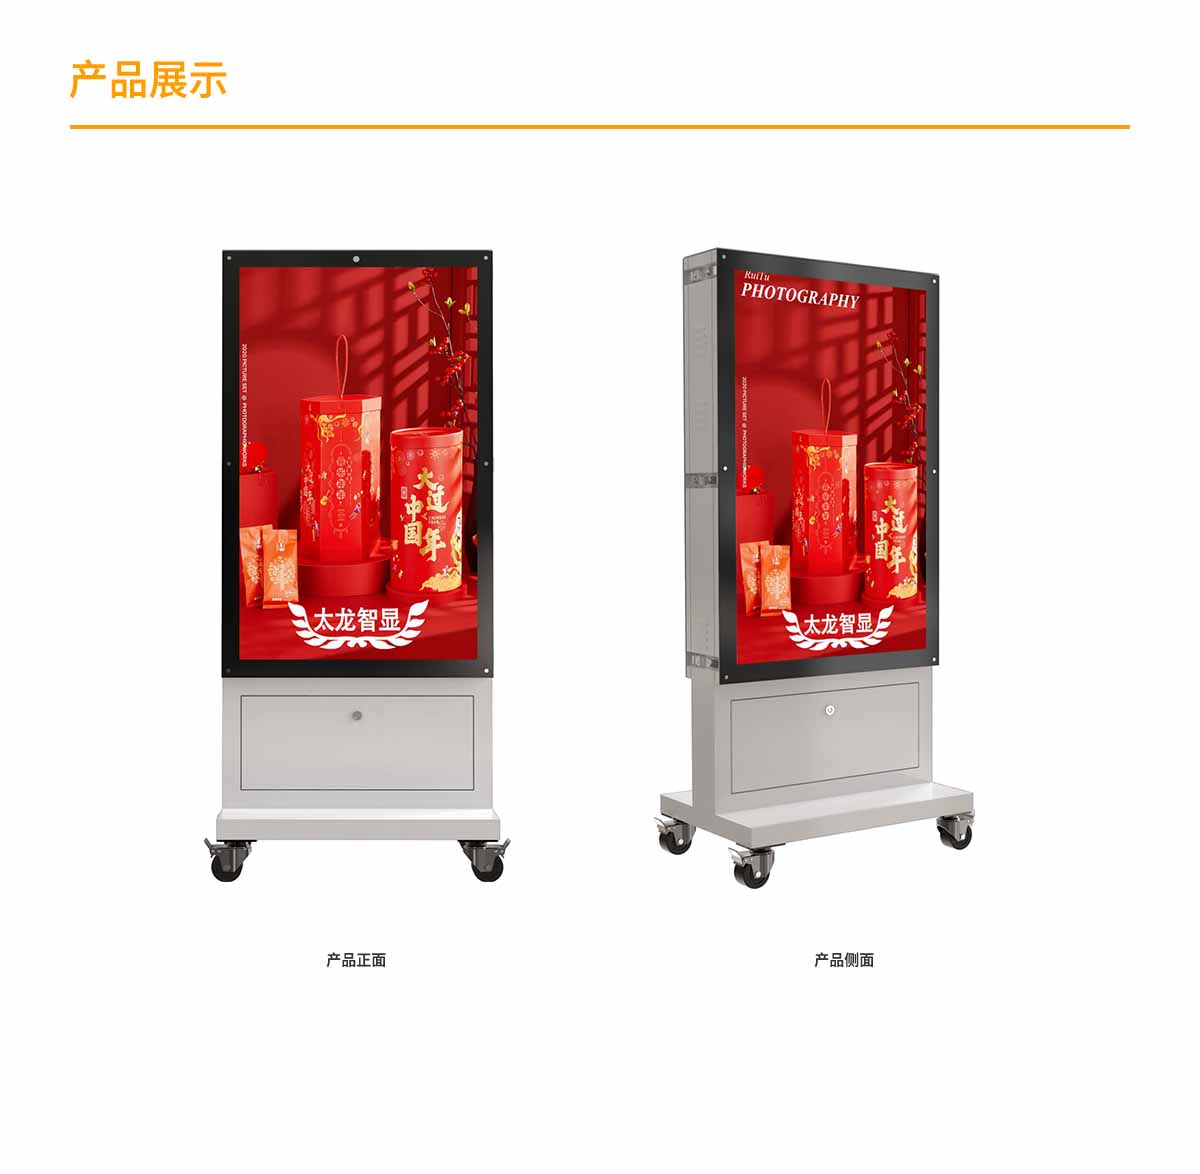 双面智能LED广告机600_10003.jpg